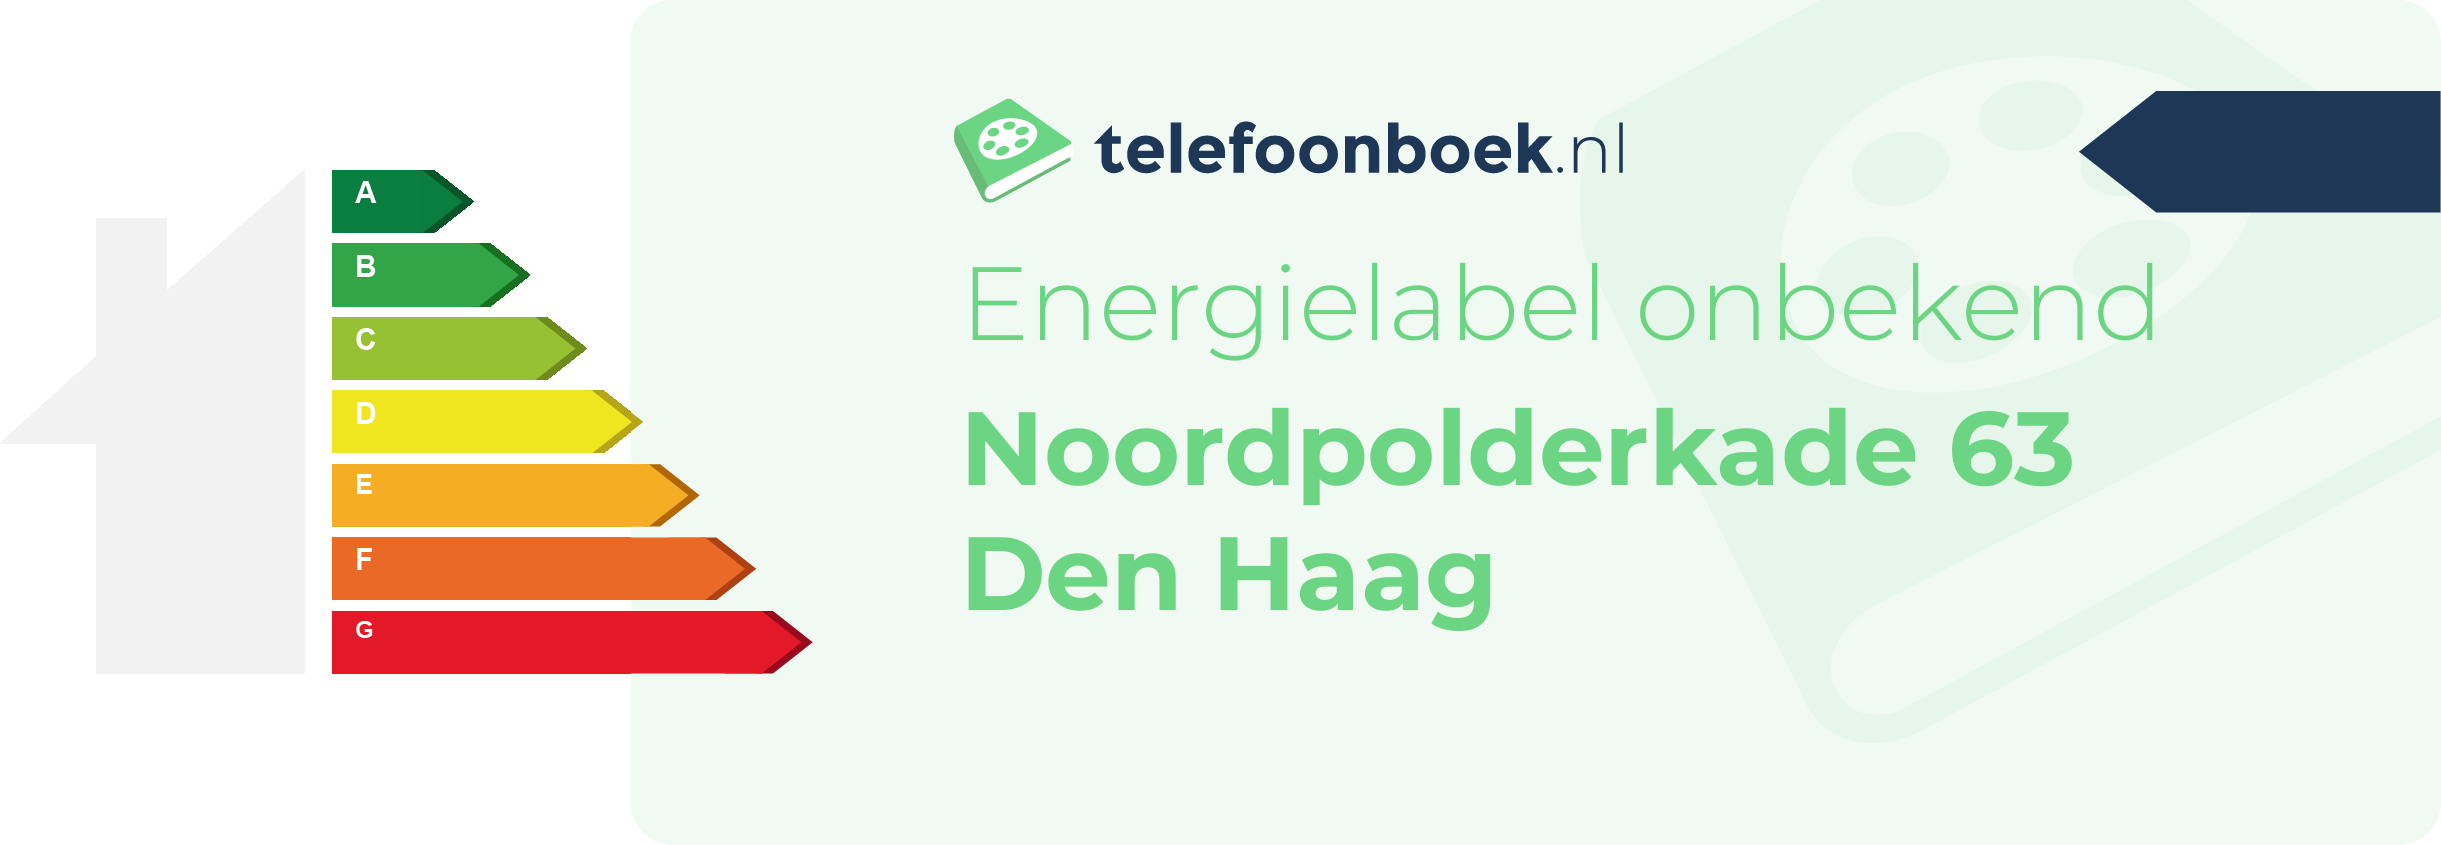 Energielabel Noordpolderkade 63 Den Haag